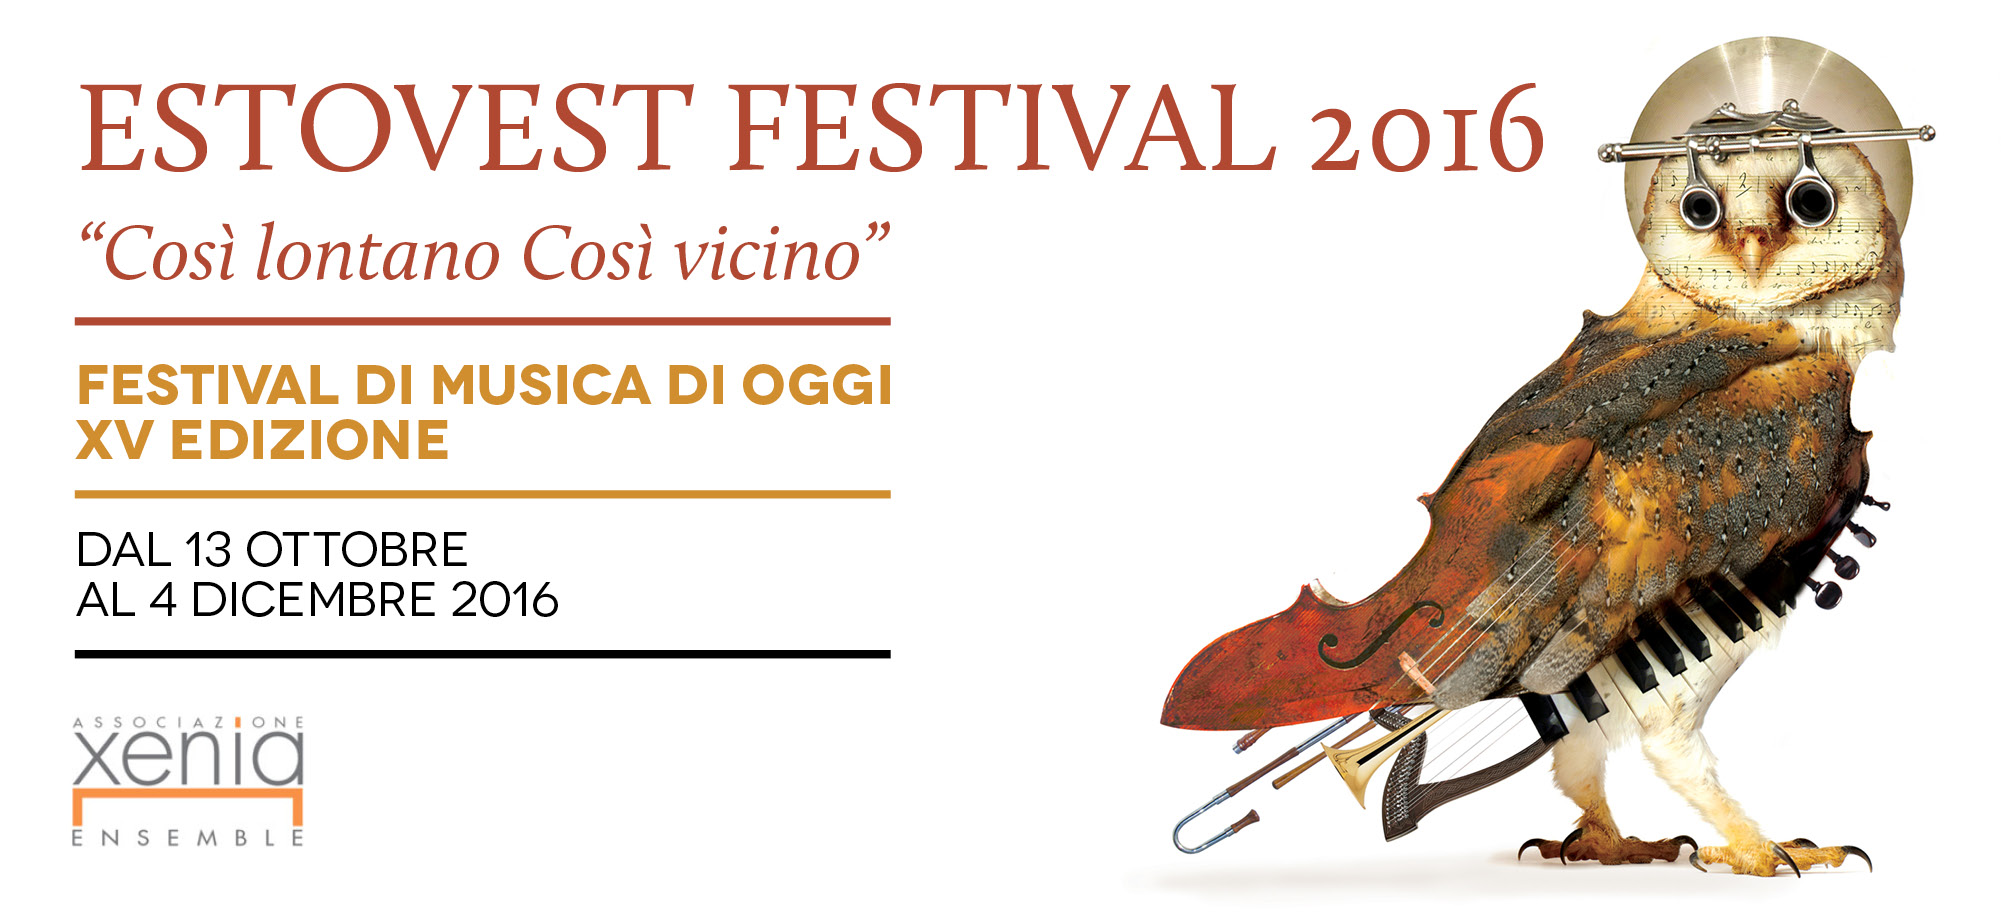 ESTOVEST Festival, L’Orologio del ‘900 tra canti di guerra e poesie